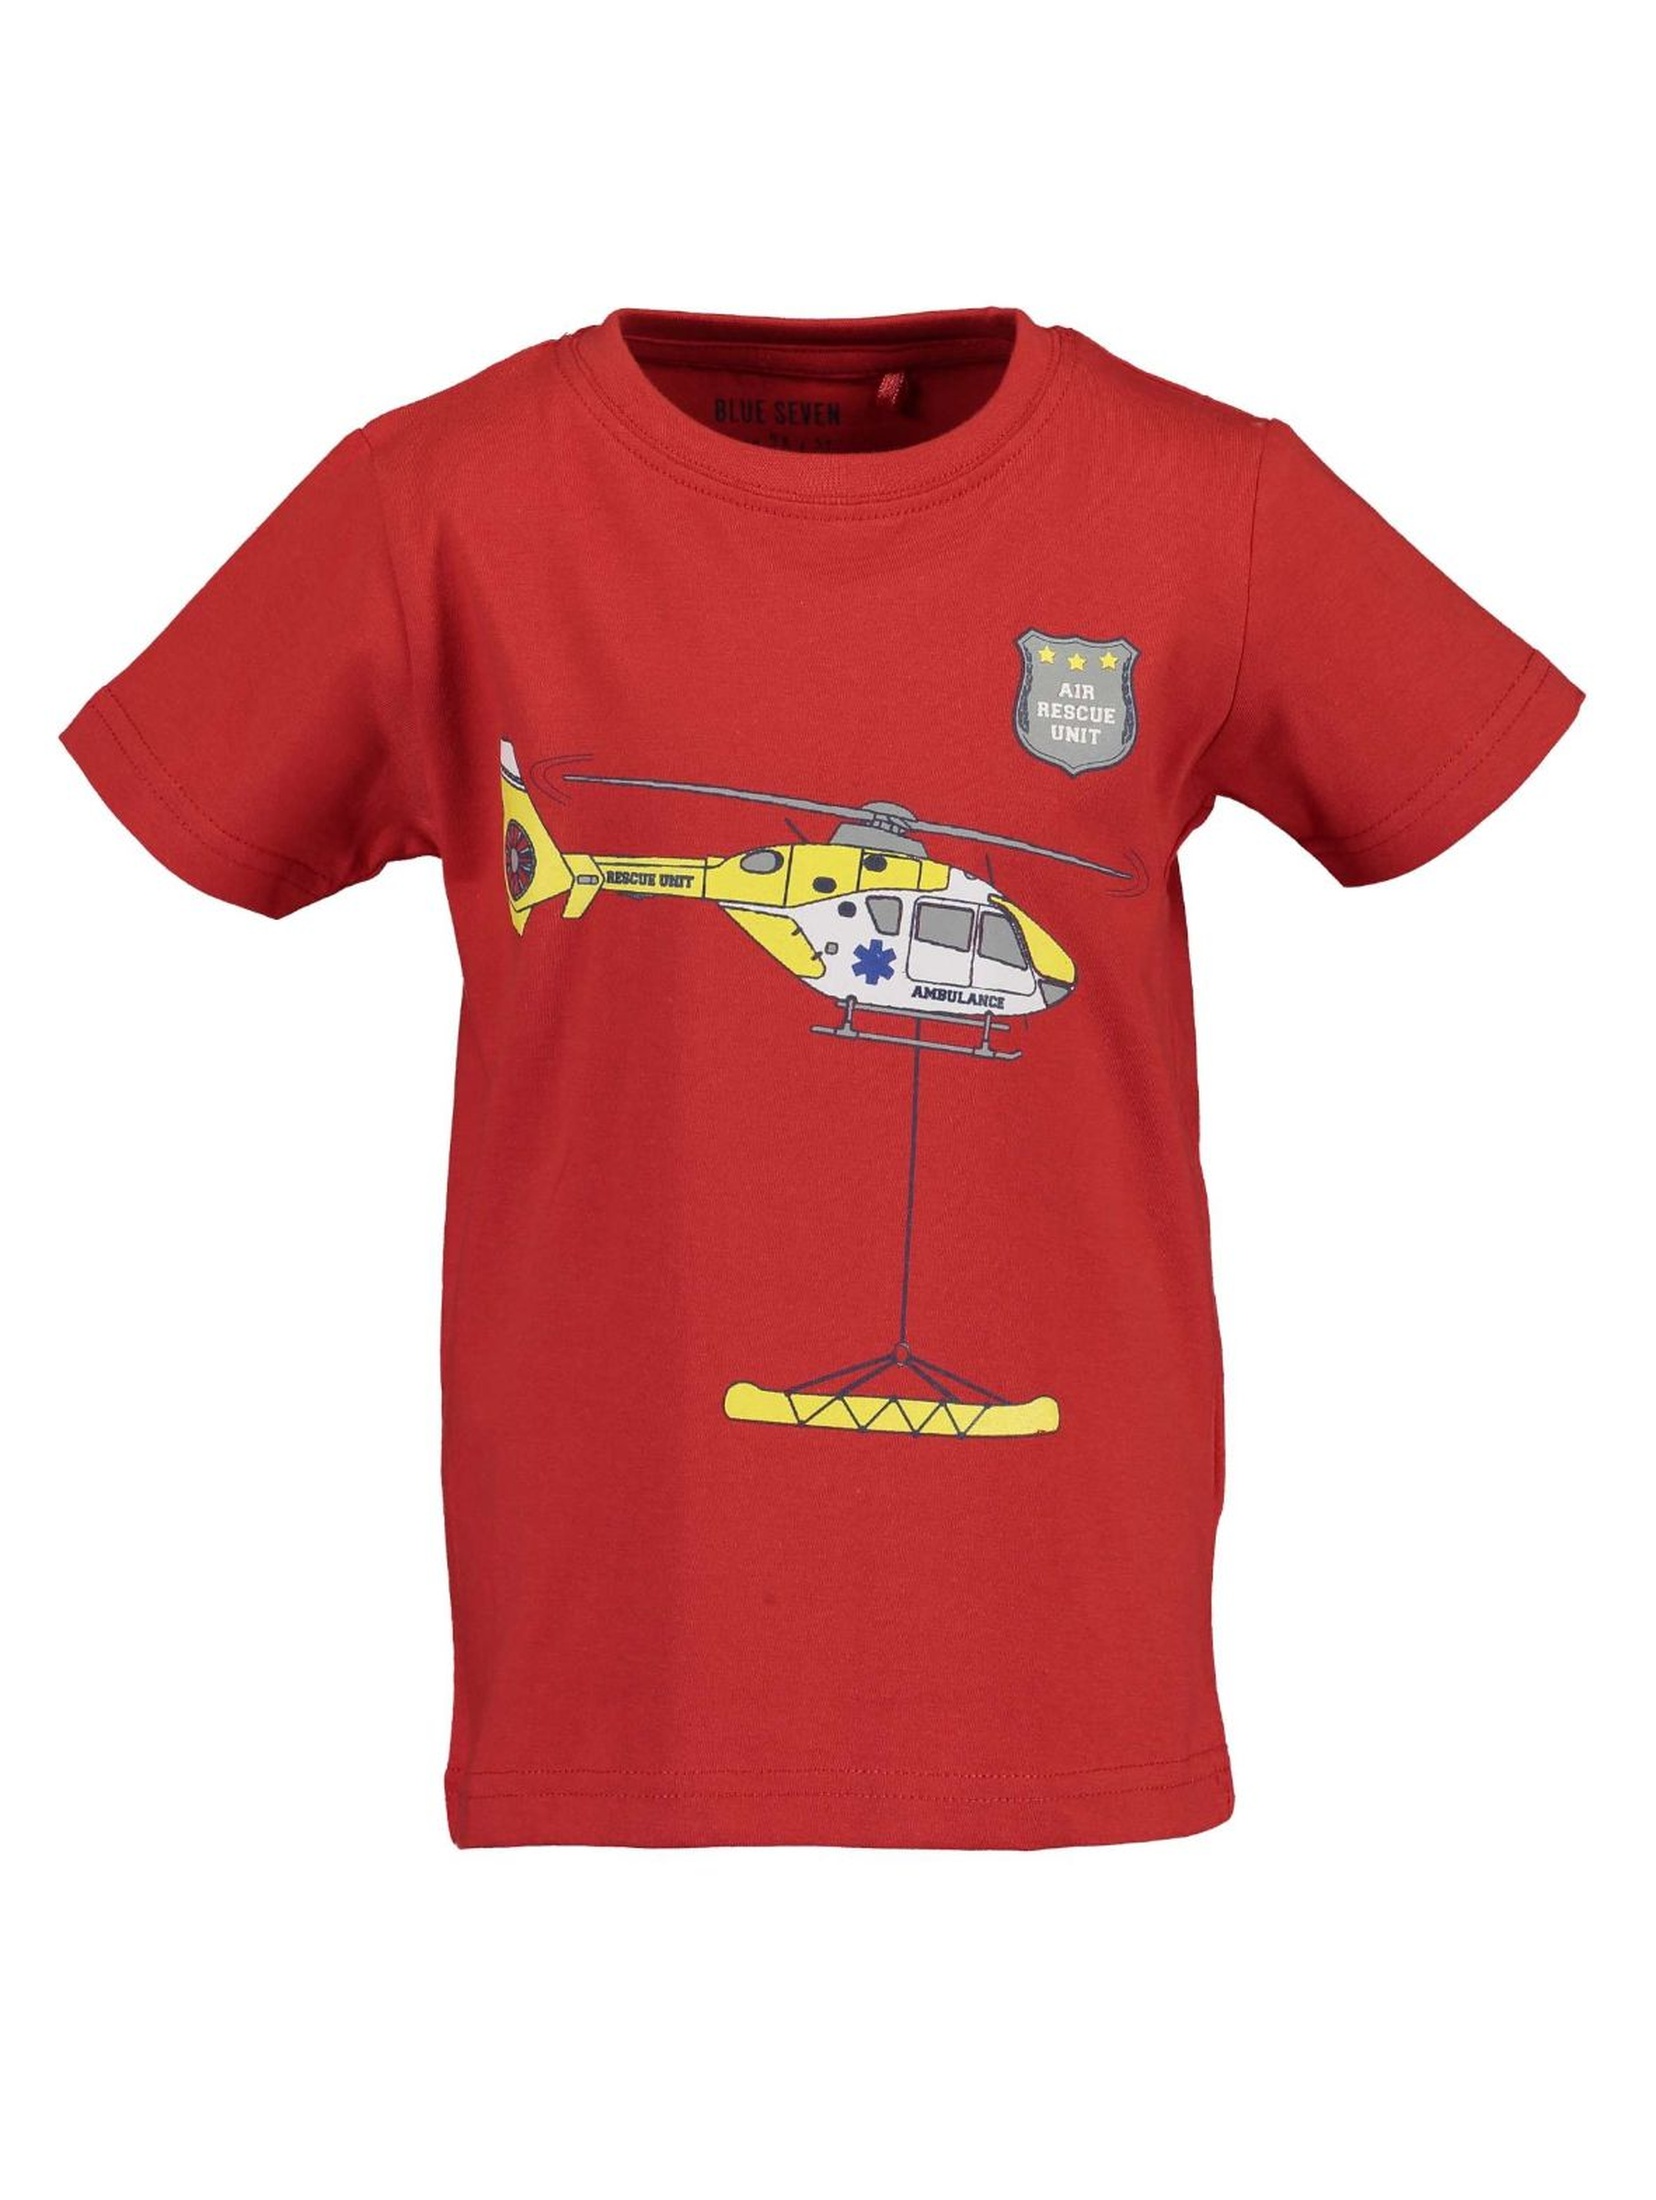 T-Shirt chłopięcy czerwony z helikopterem